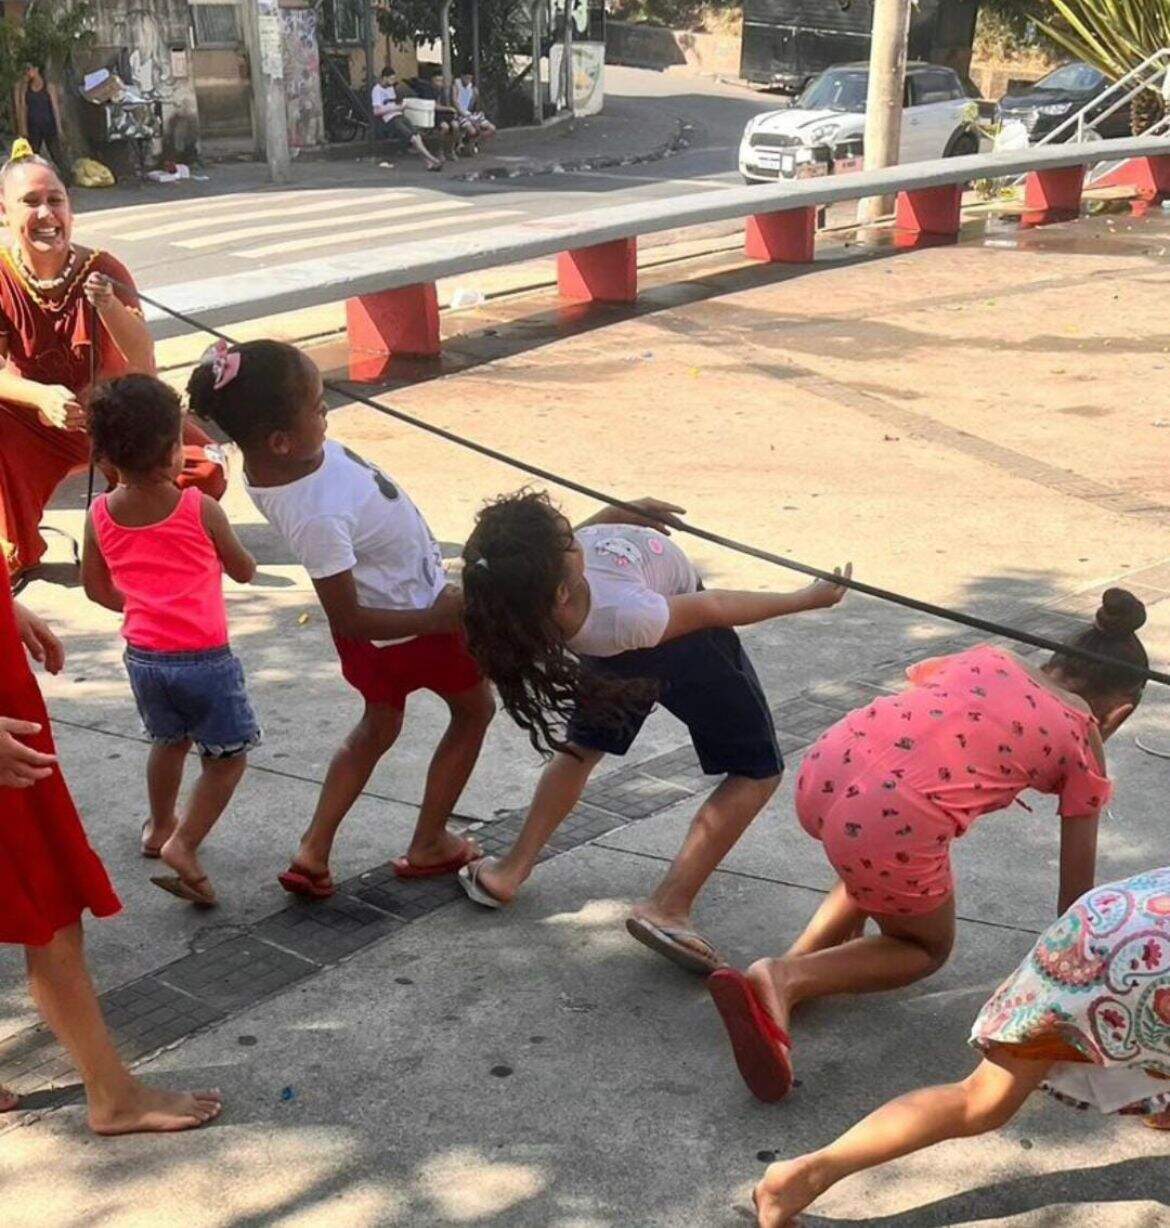 Cinco crianças brincam de passar debaixo da corda, enquanto uma mulher sorridente segura a corda